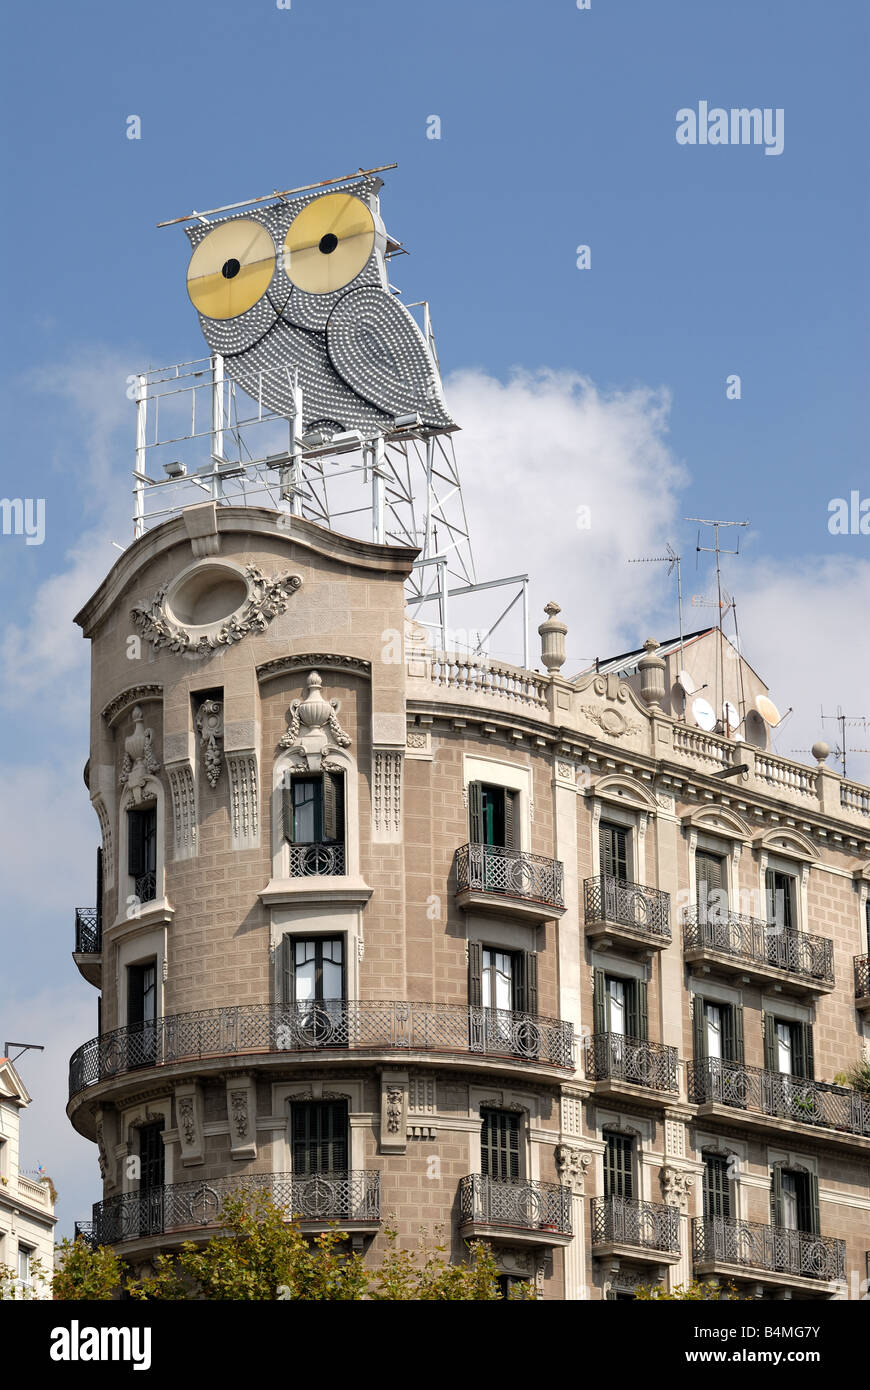 Grand hibou signe au-dessus de la construction à Barcelone Espagne Banque D'Images